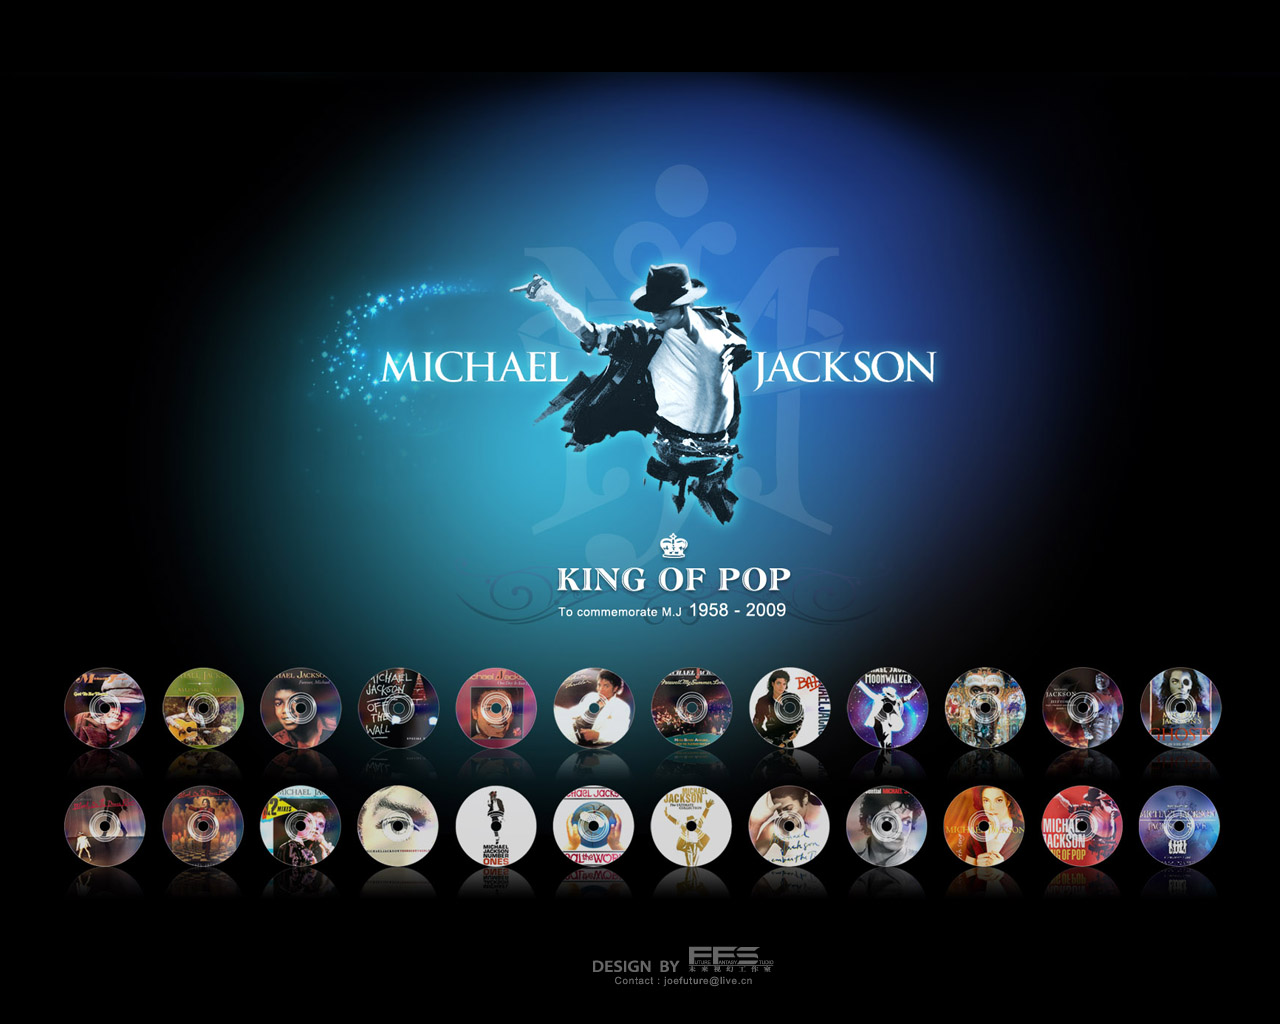 http://2.bp.blogspot.com/-bAZV6v1Sm4U/Tmpvye3Y1NI/AAAAAAAAAJA/WRy1U8yepjk/s1600/Michael+Jackson.jpg